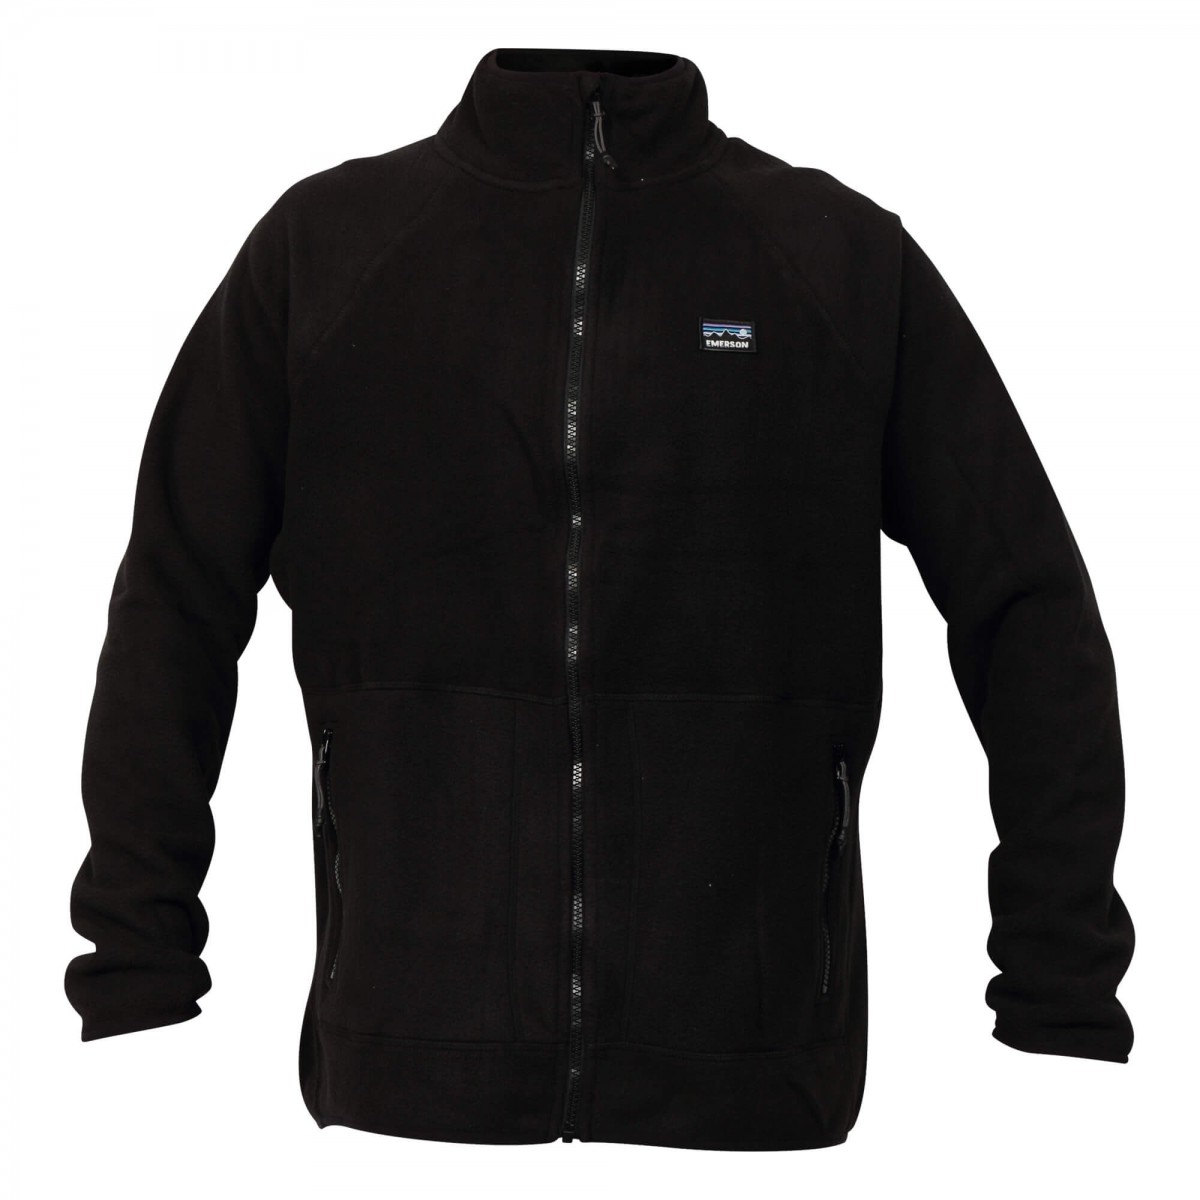 Emerson Zip Up Fleece Jacket - Altershops Μαύρο